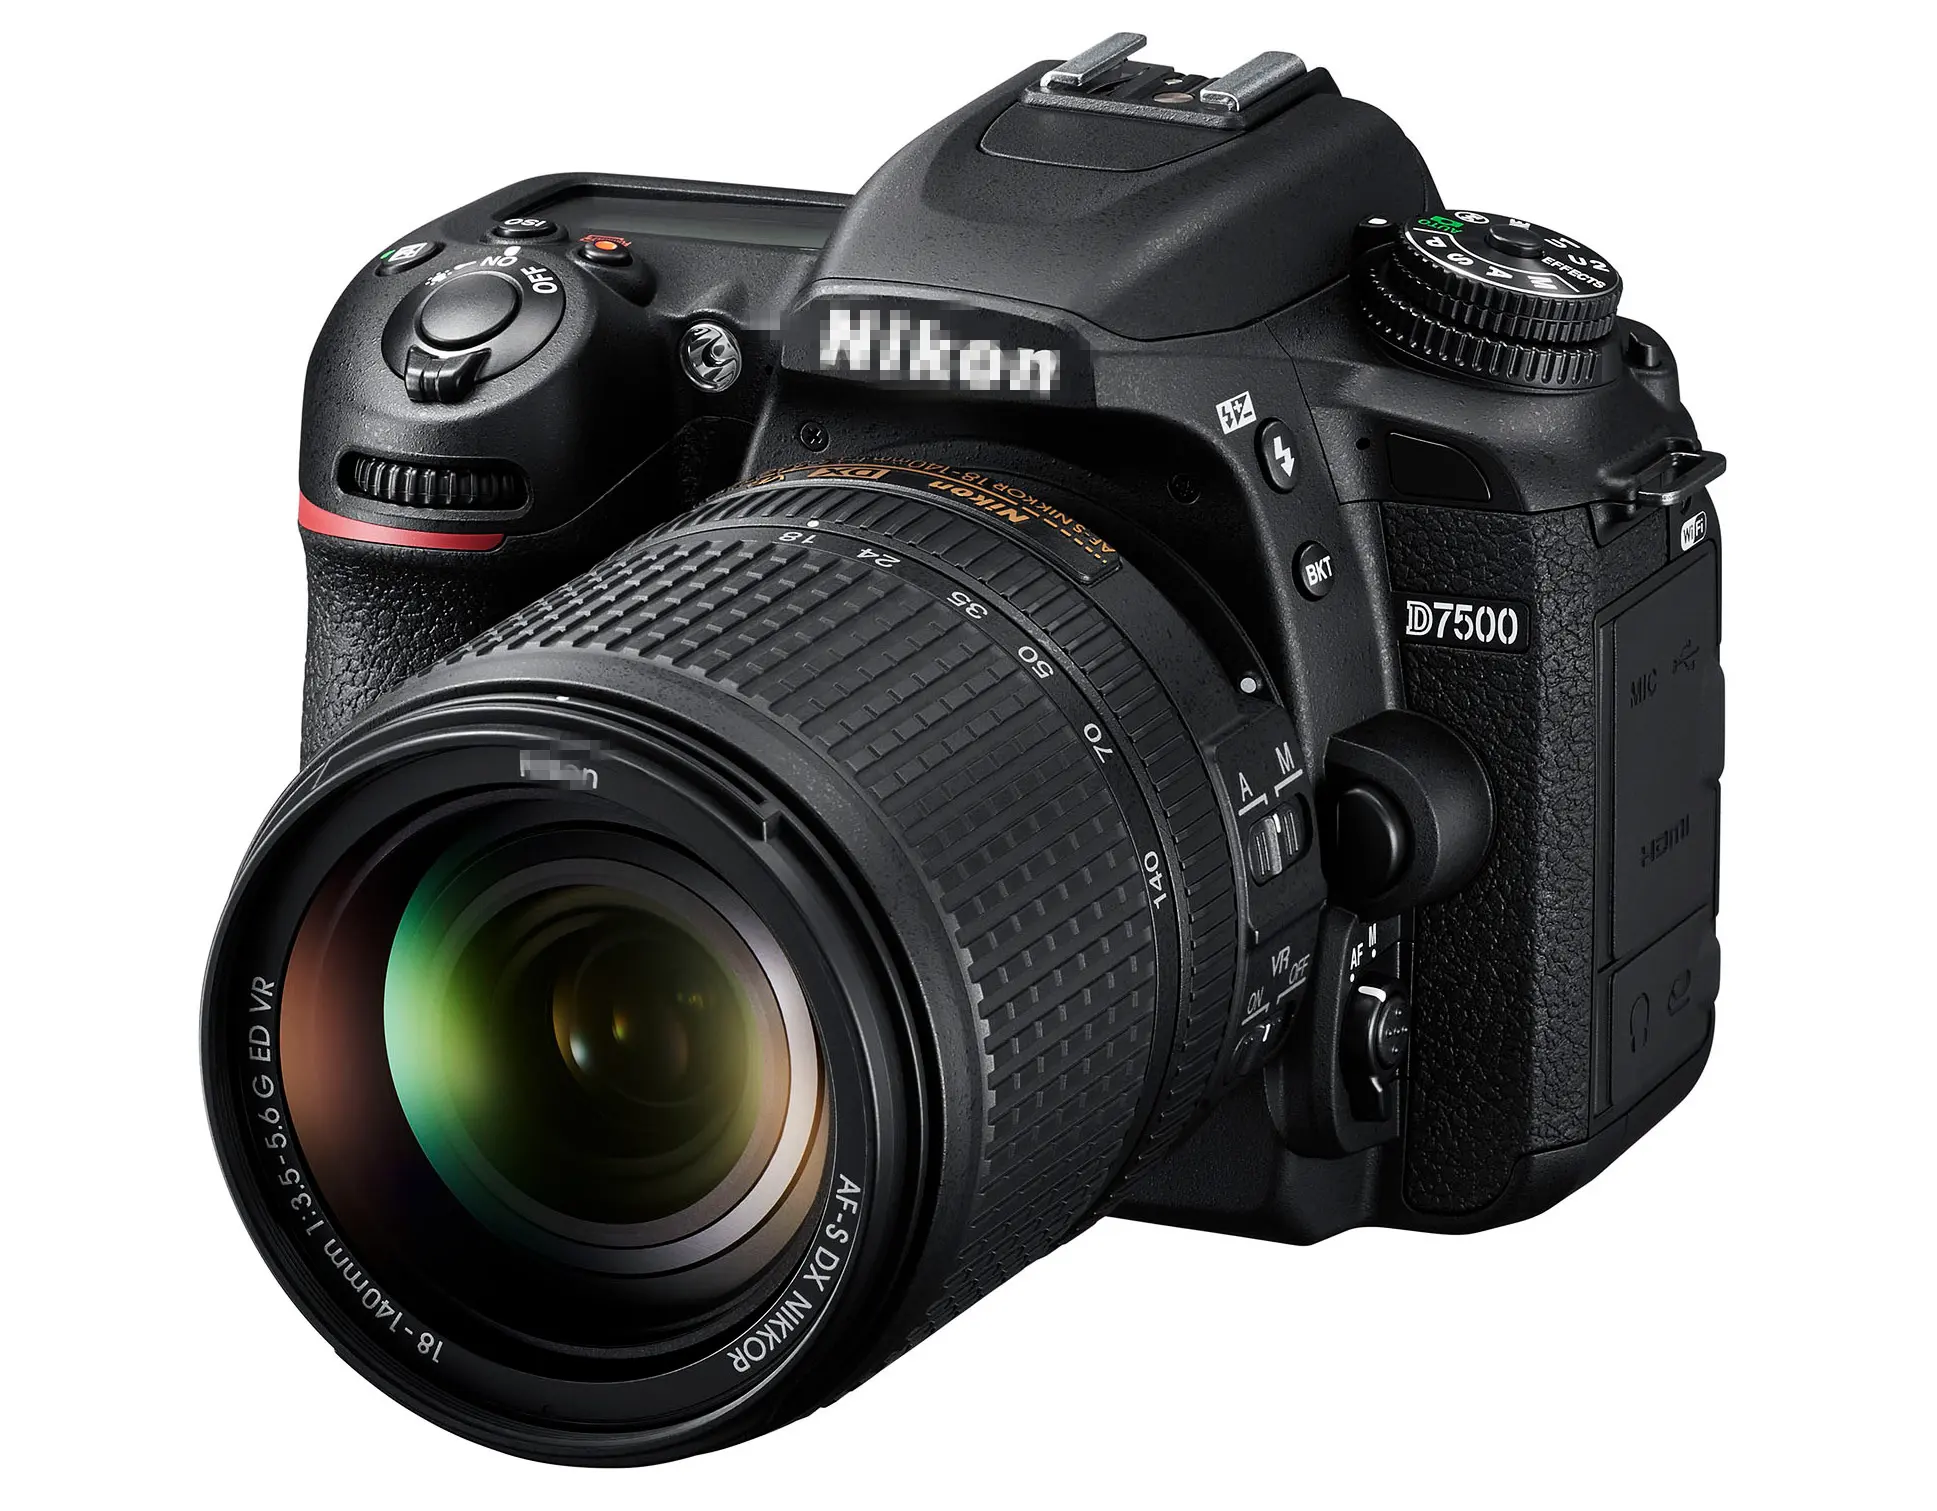 عرض خاص للبيع بالجملة عدسة منعكسة بقائمة عالية الجودة جديدة لـ nigon D7500 + طقم كاميرا d1500-Vr slr